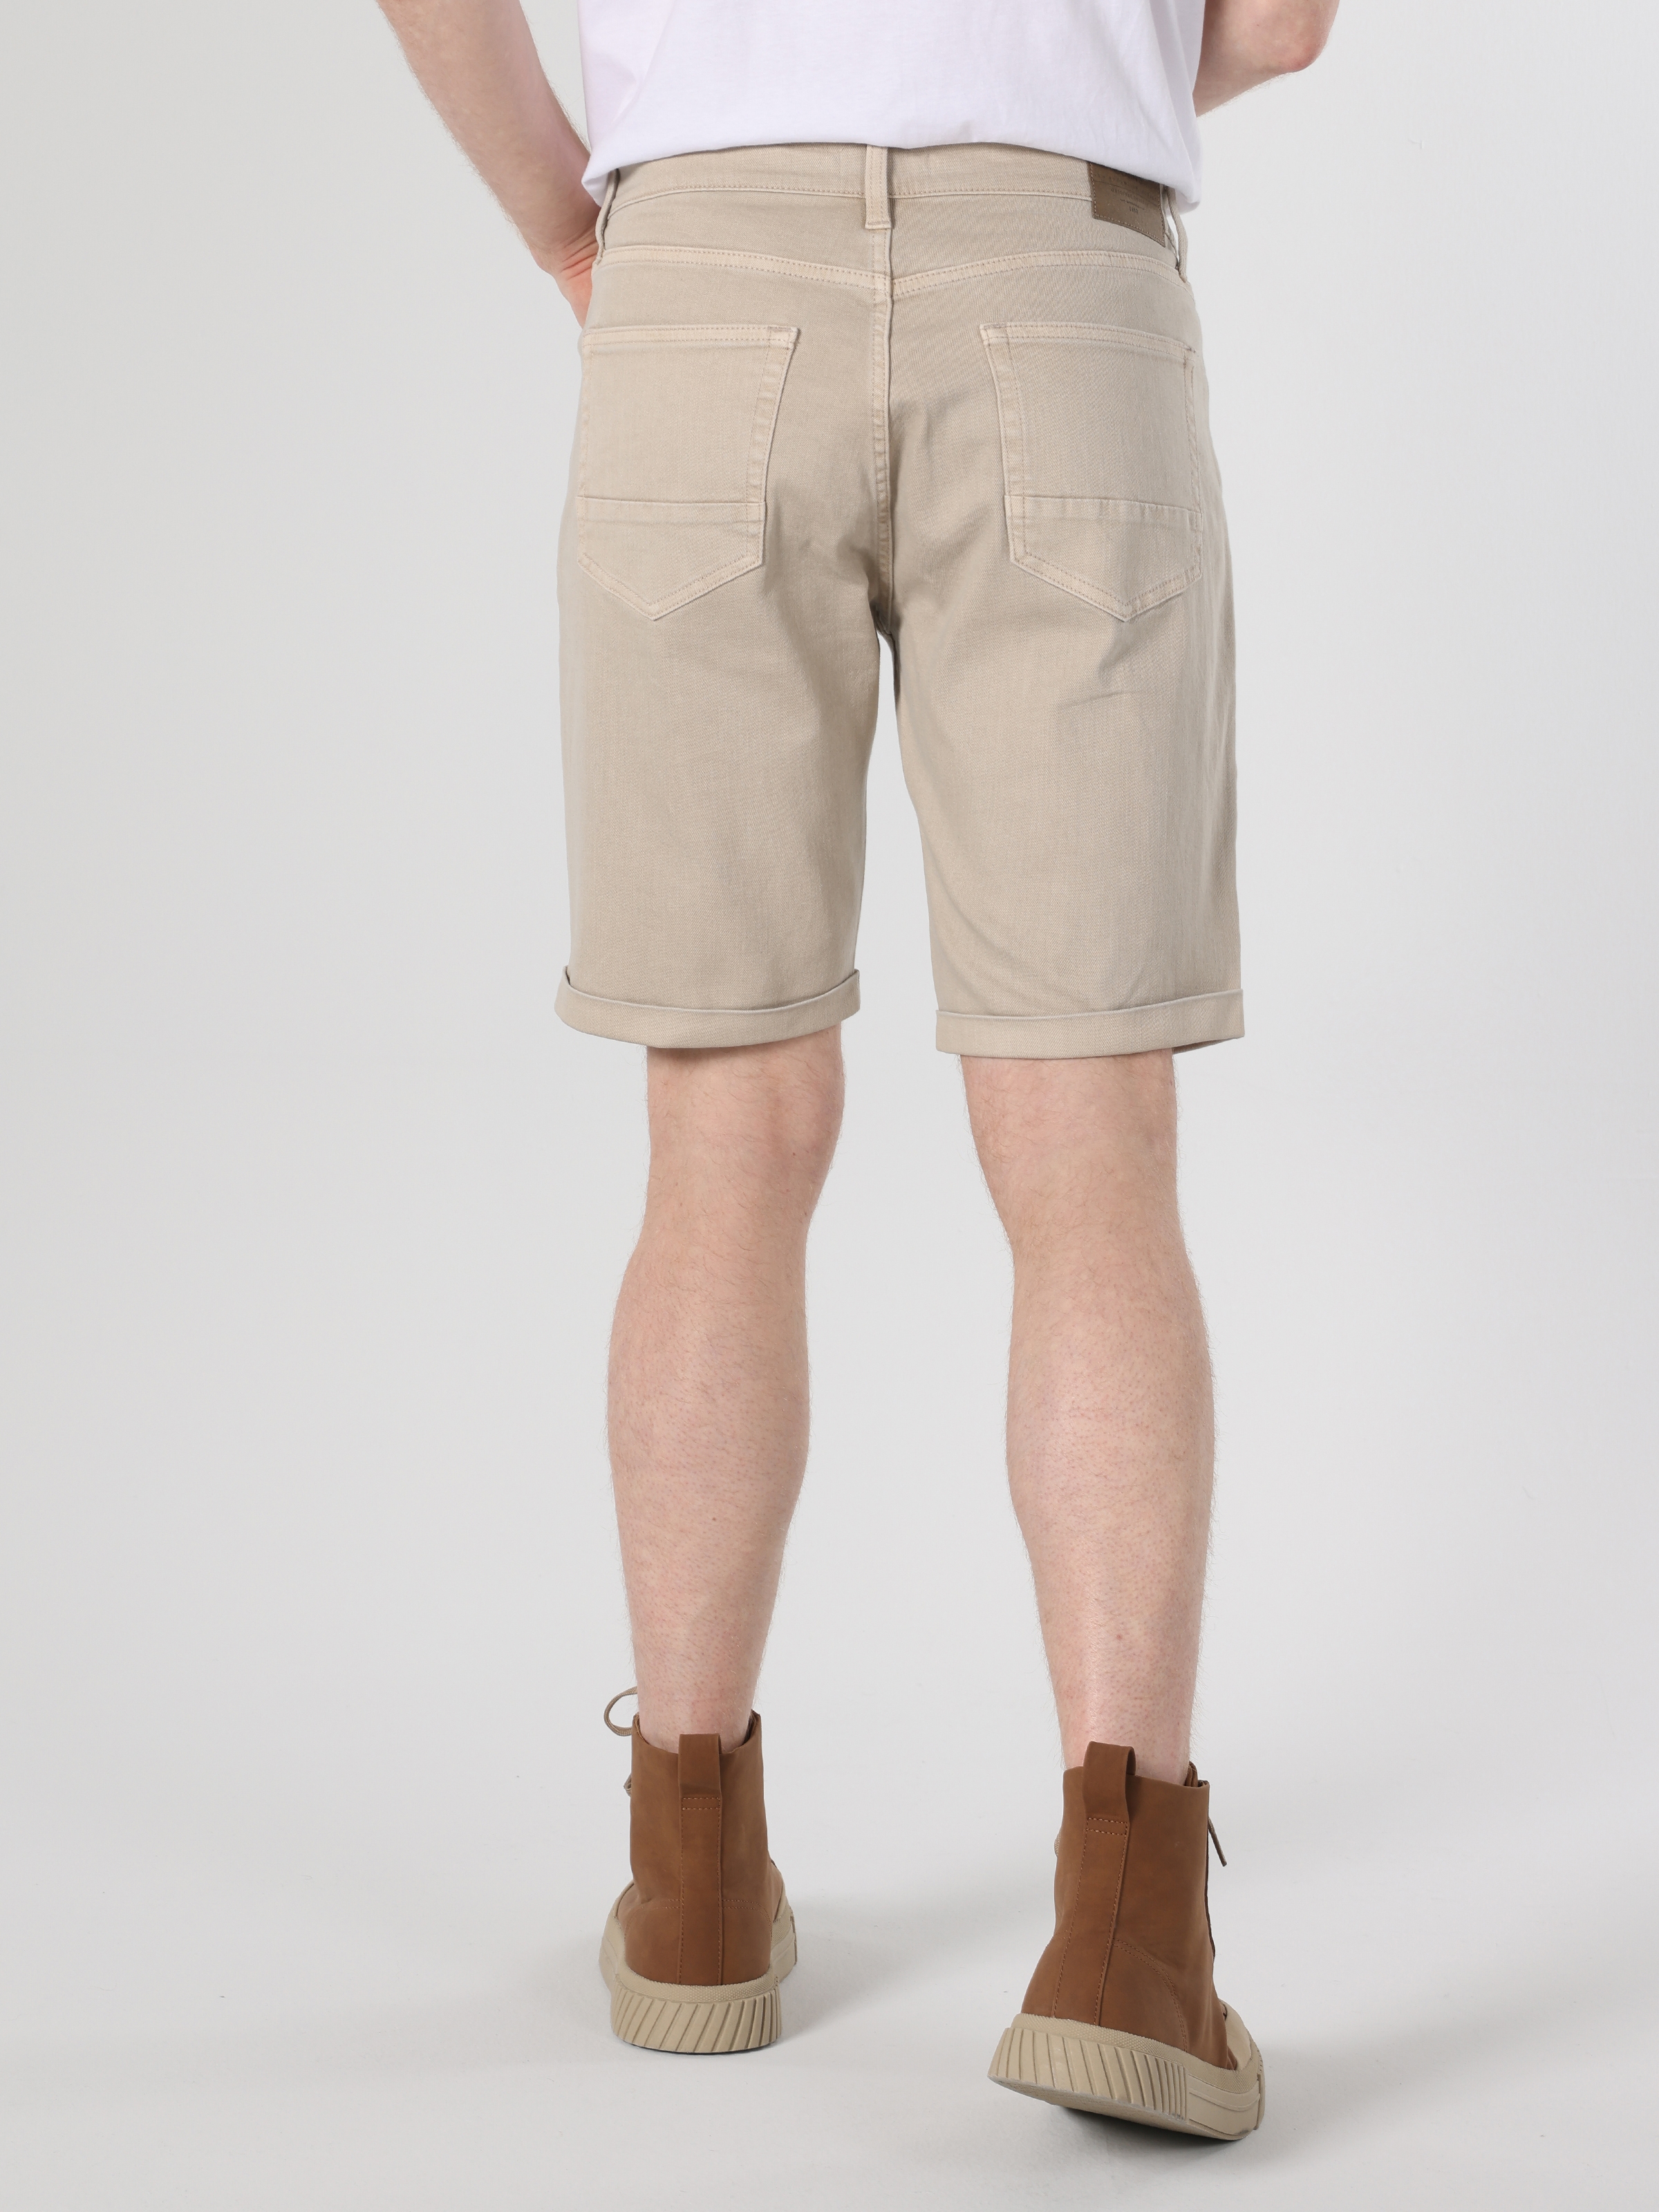 Afficher les détails de Short Homme Beige Taille Moyenne Coupe Regular